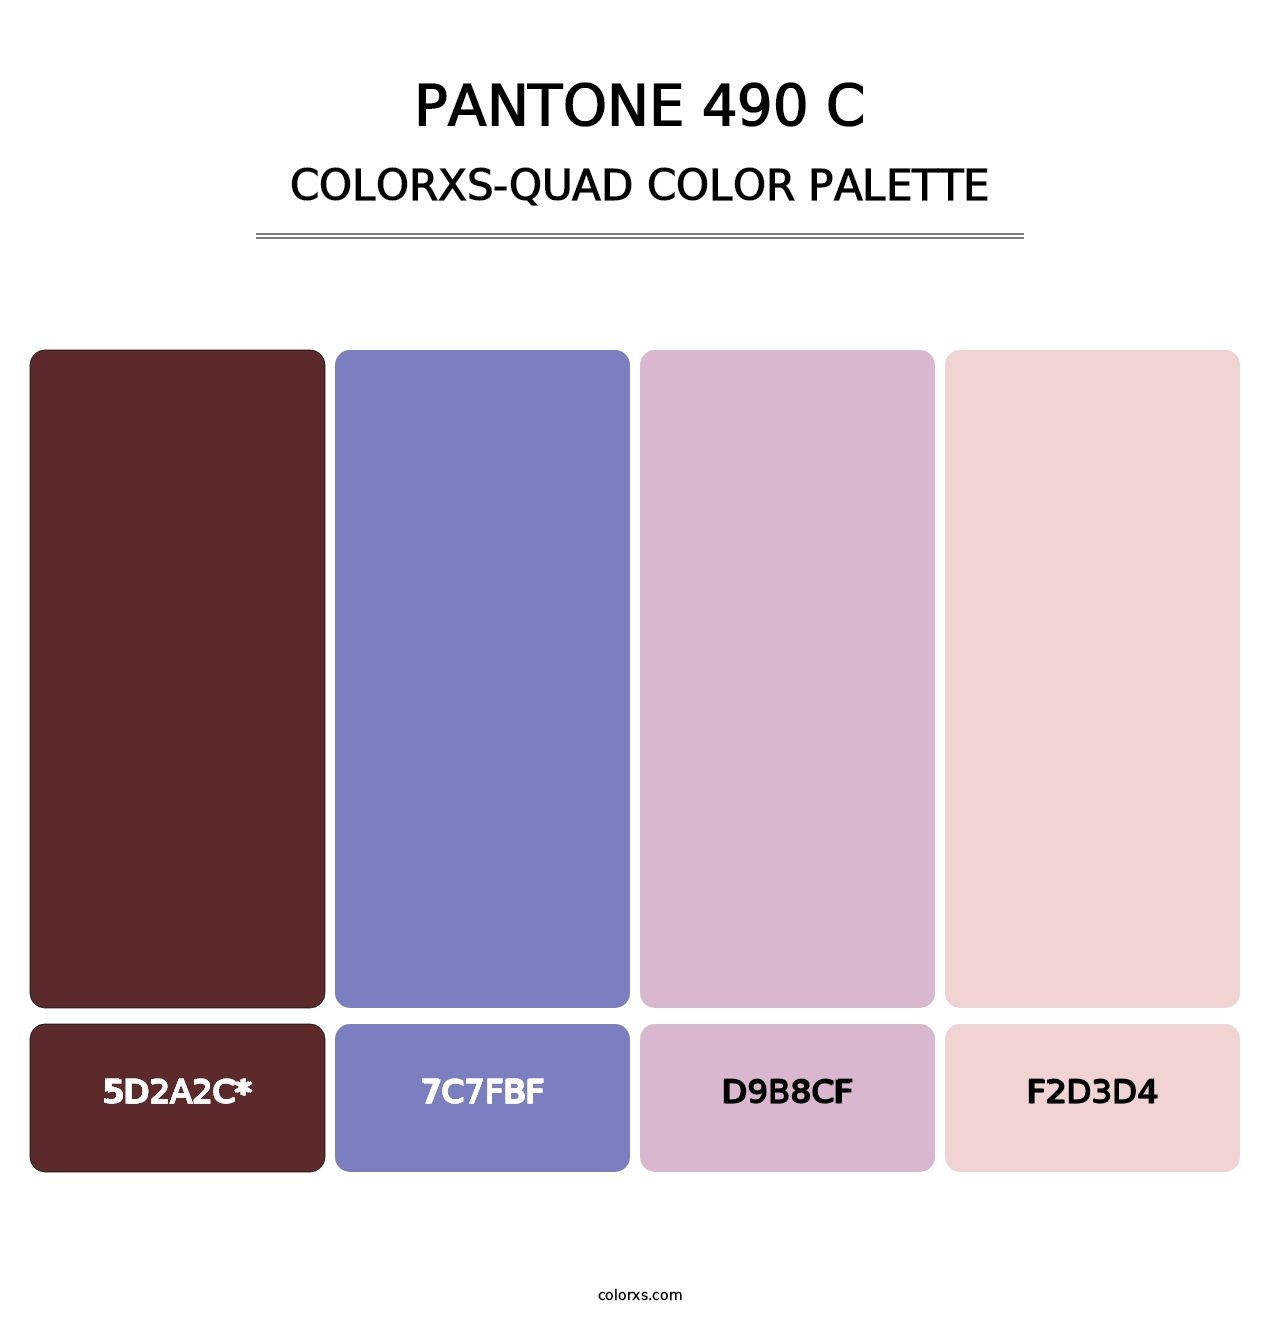 PANTONE 490 C - Colorxs Quad Palette